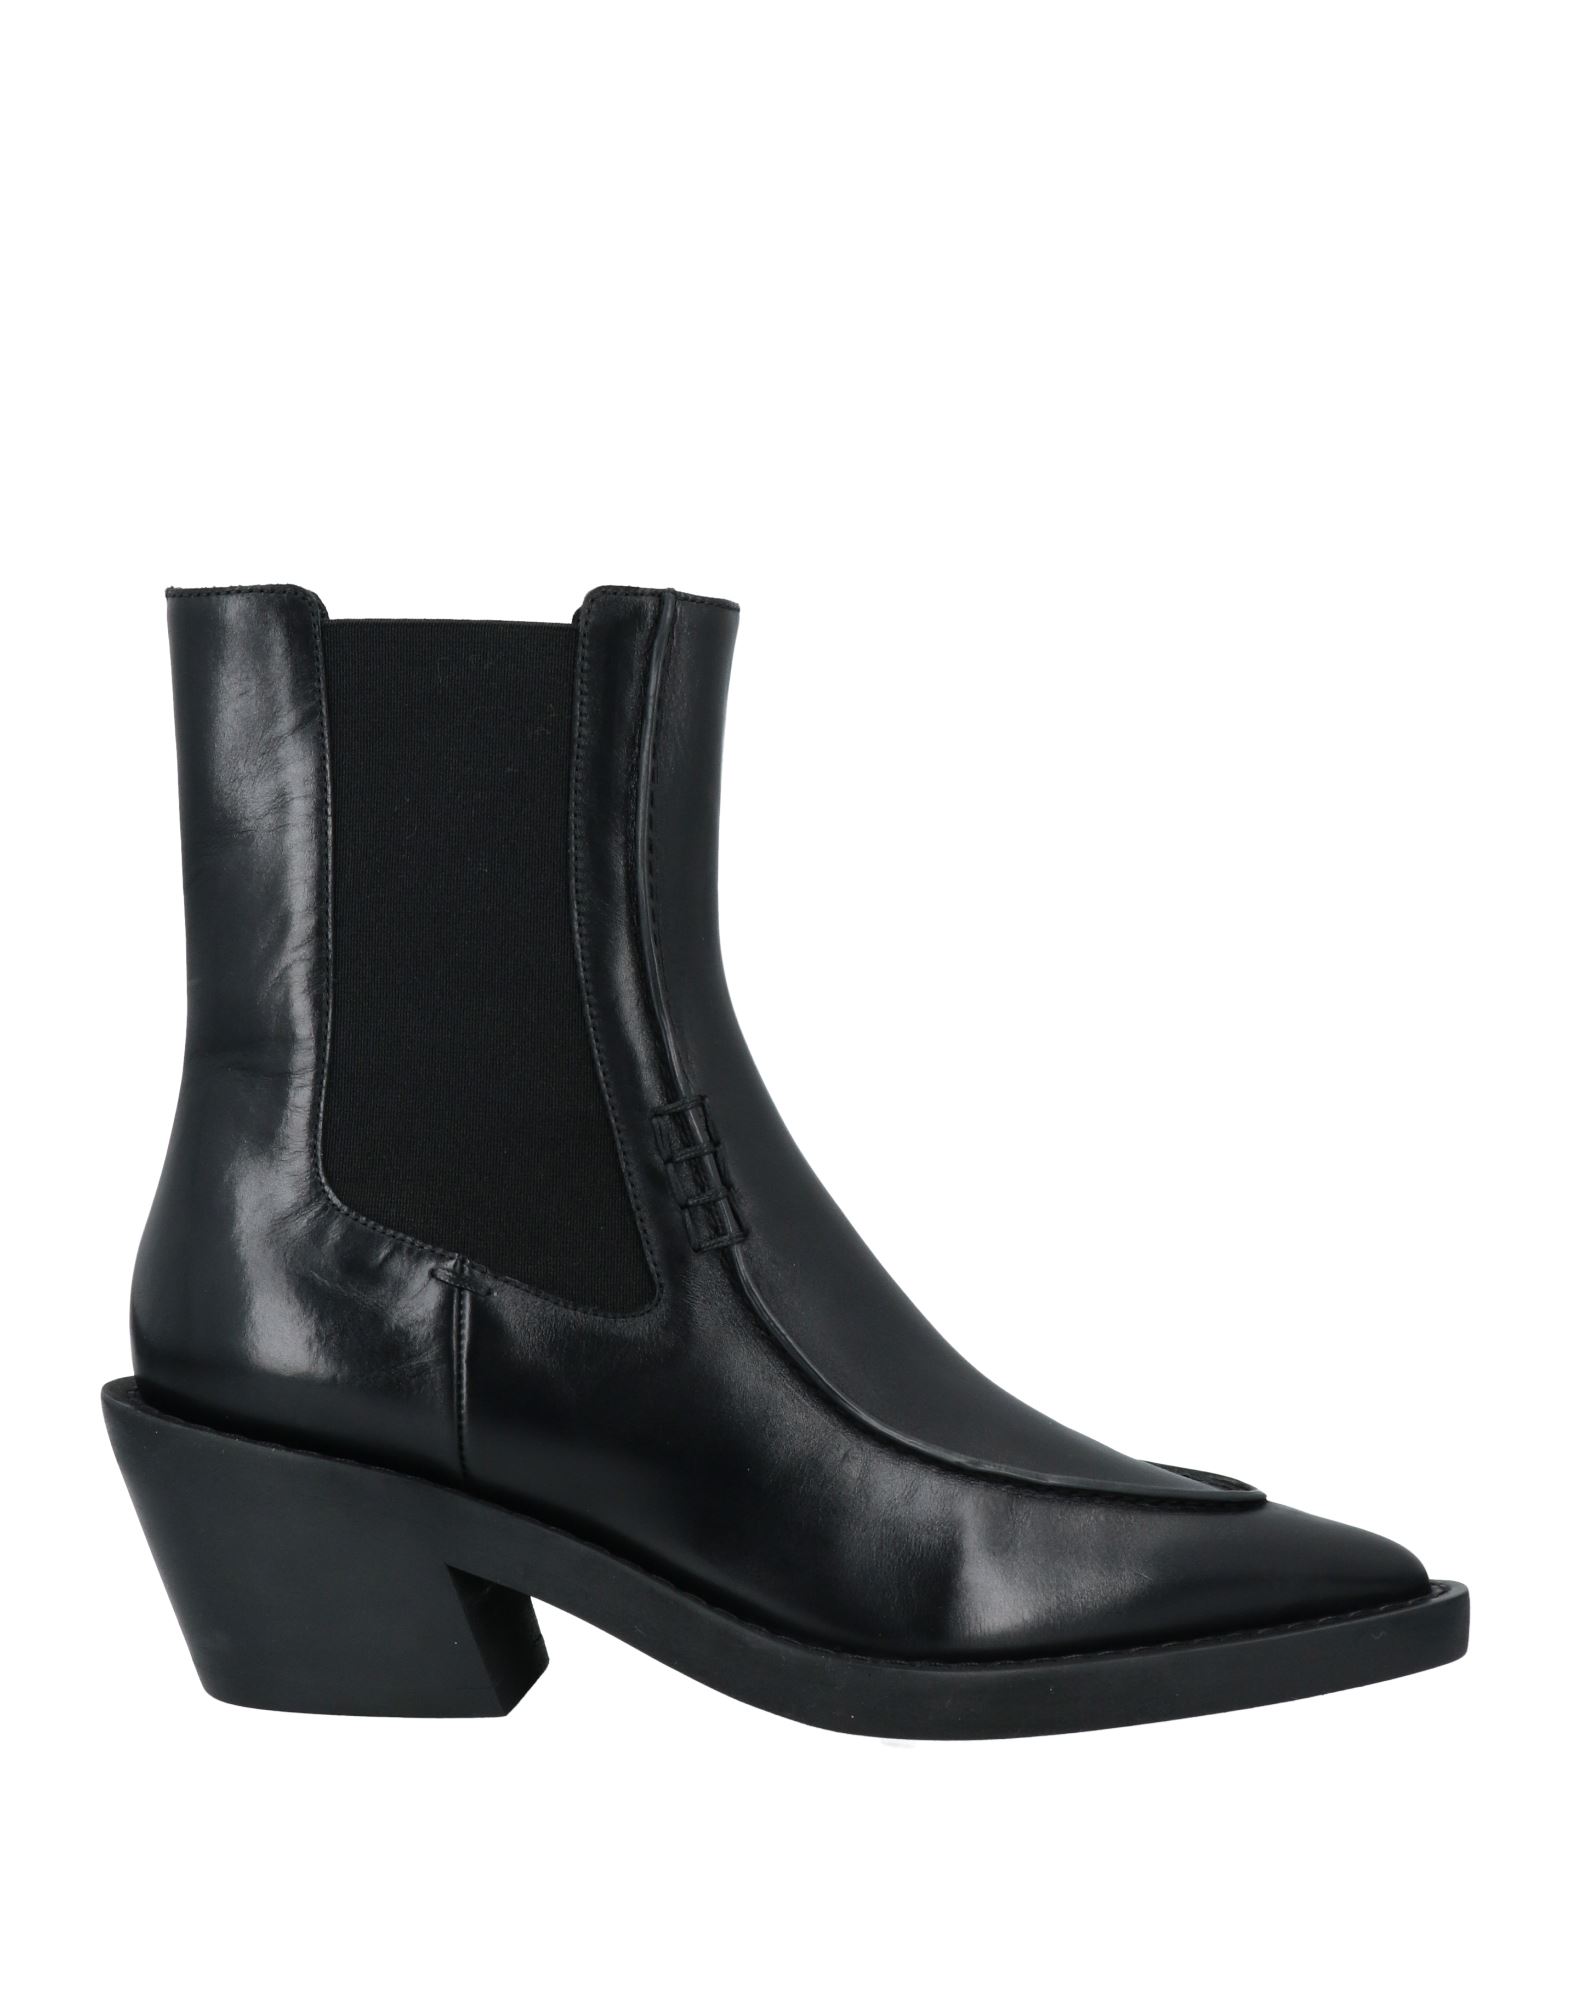 Shop Khaite Woman Ankle Boots Black Size 6 Leather